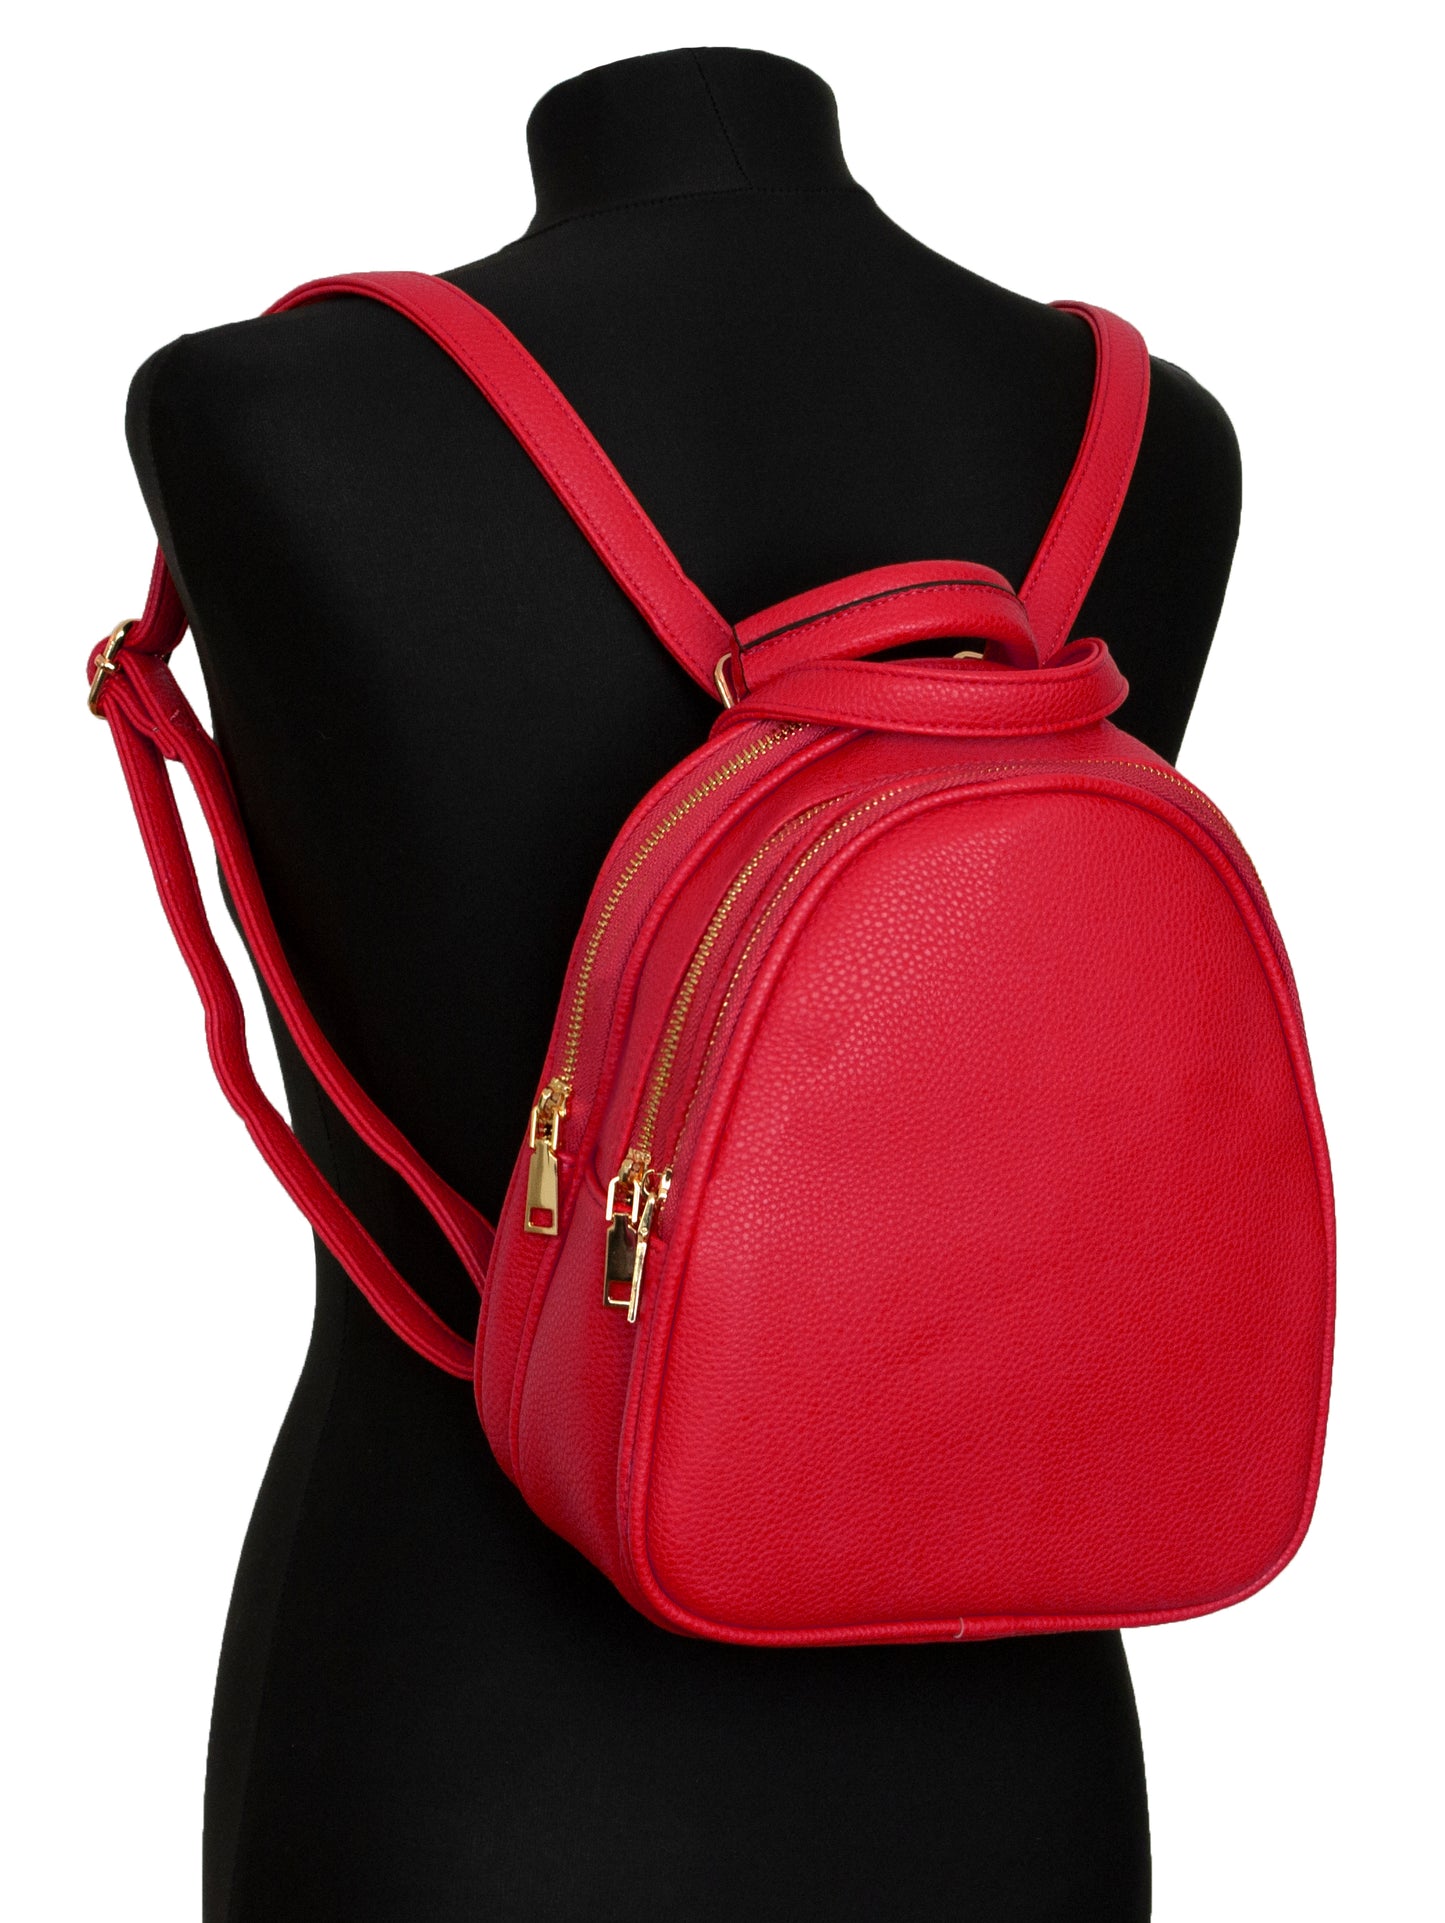 2in1 Backpack and Shoulder/Crossbody Bag